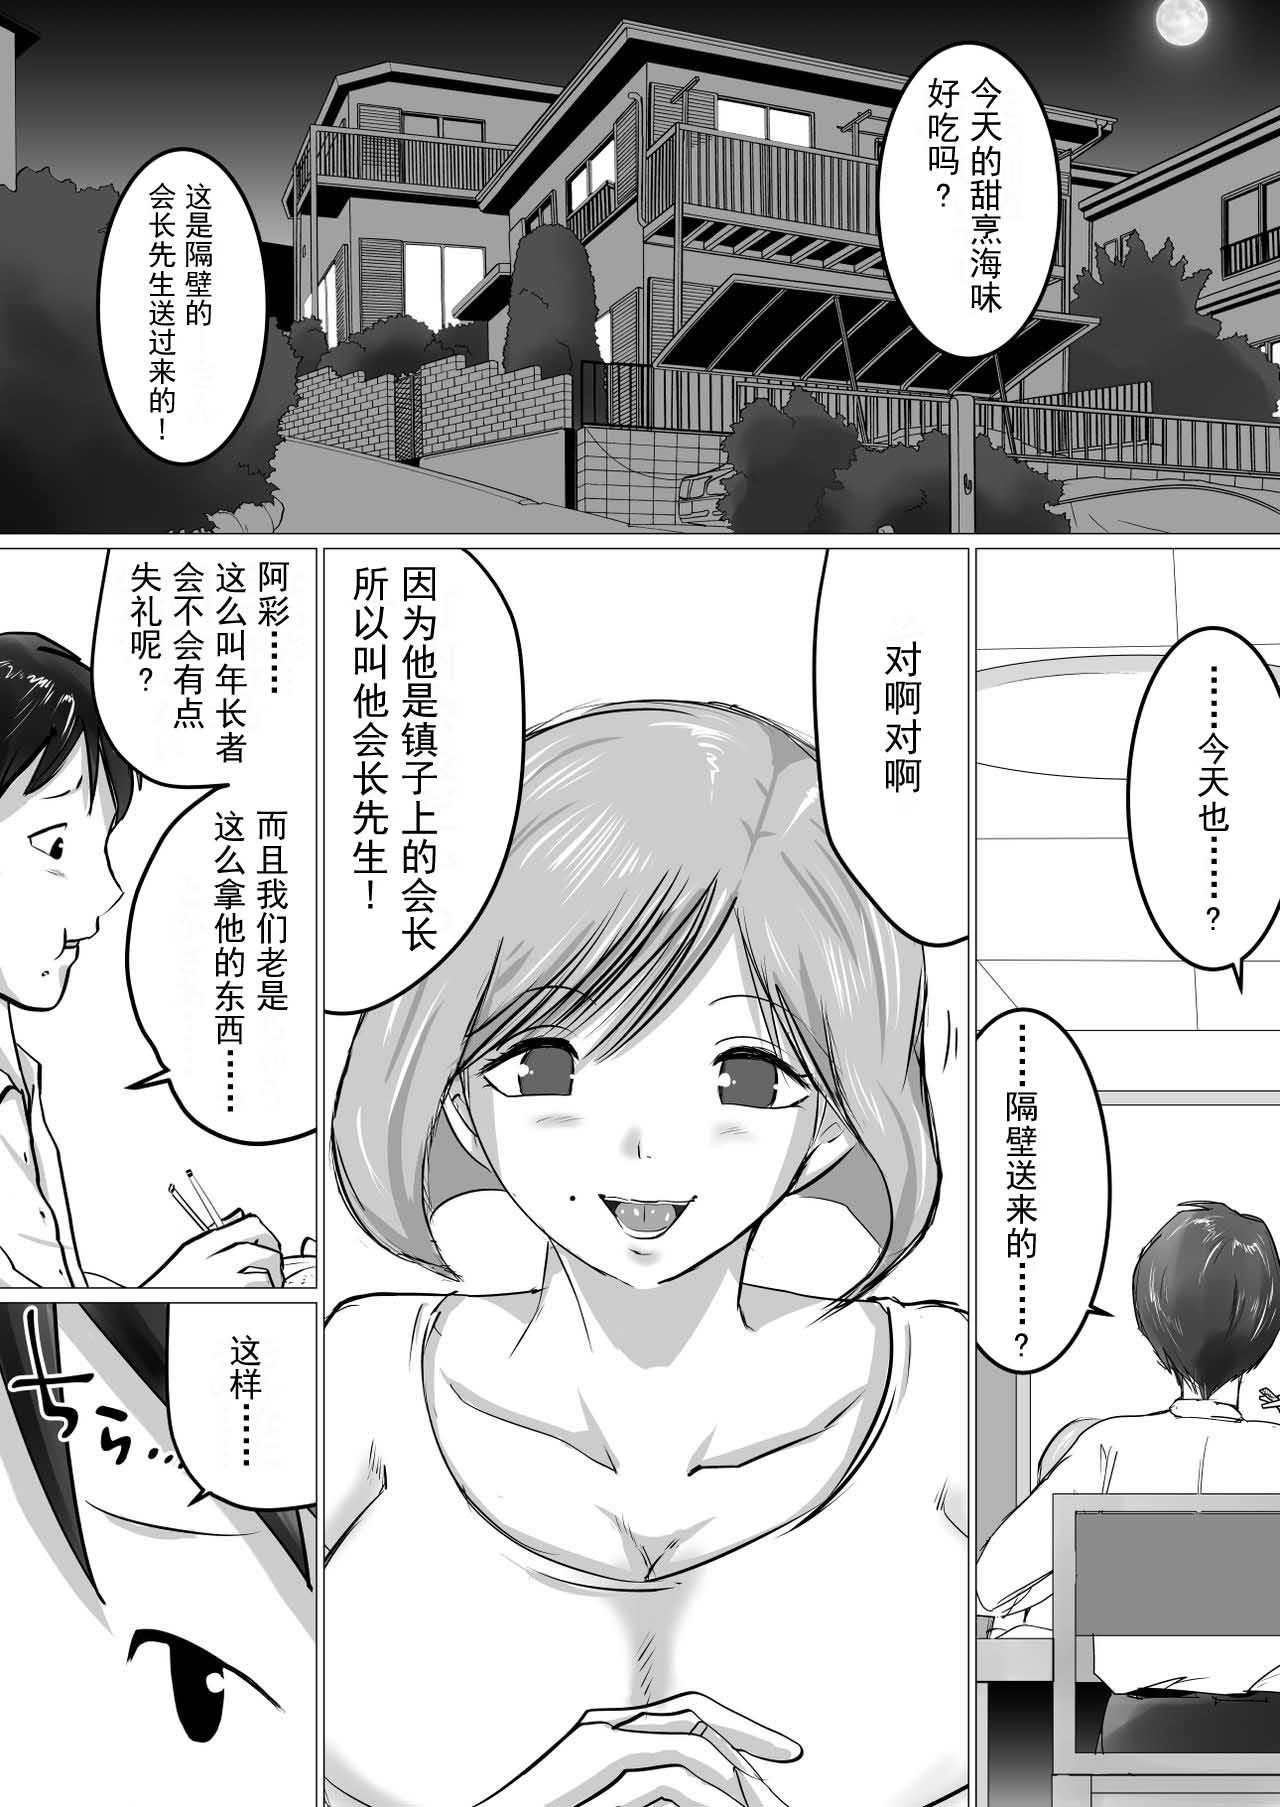 Pigtails [Makoto Shiyaka] Rinjin ni Dakare Tsuzukeru to iu koto[Chinese]【不可视汉化】 - Original Animated - Page 2